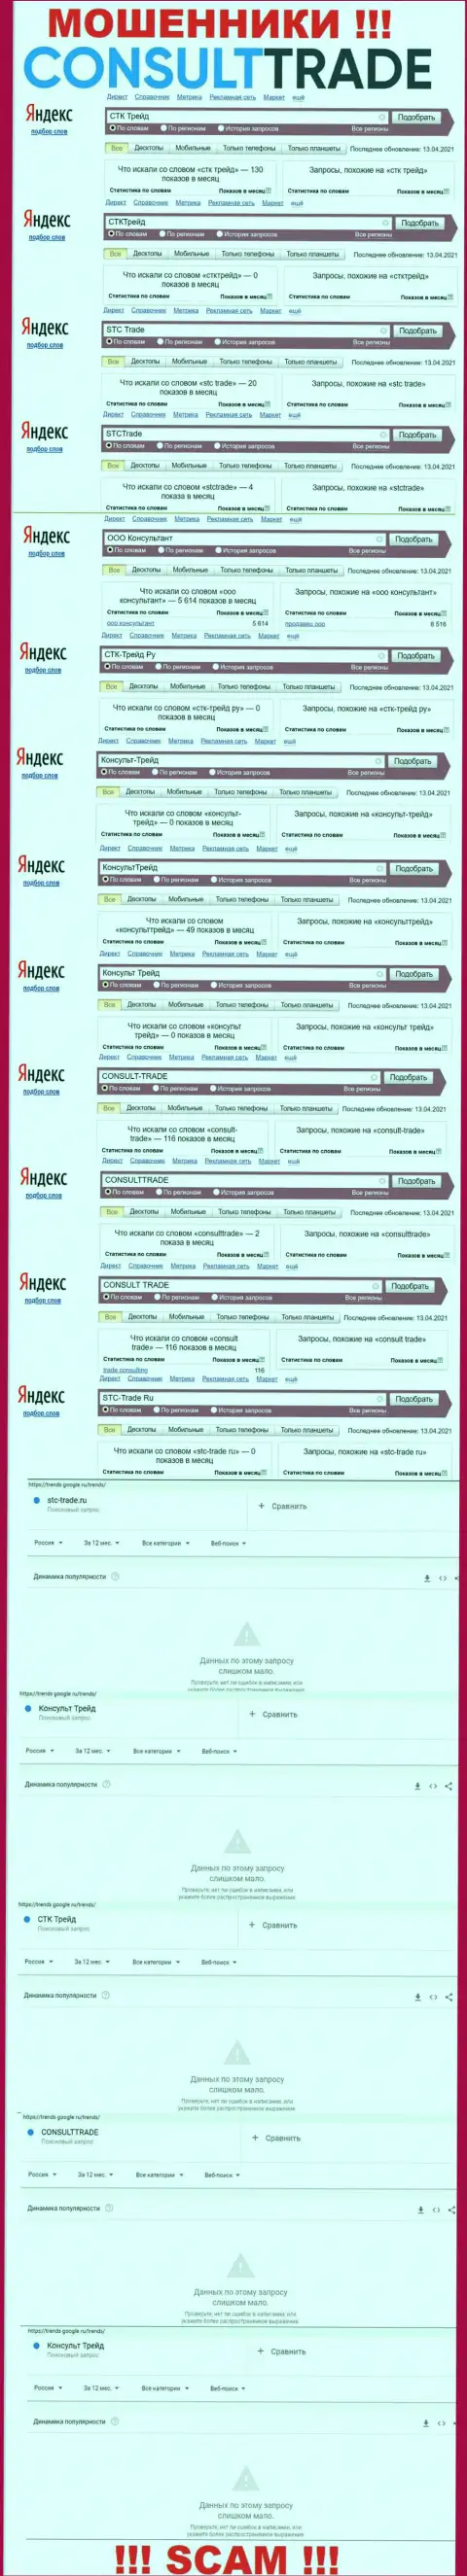 Скриншот статистических данных поисковых запросов по противозаконно действующей организации CONSULT-TRADE